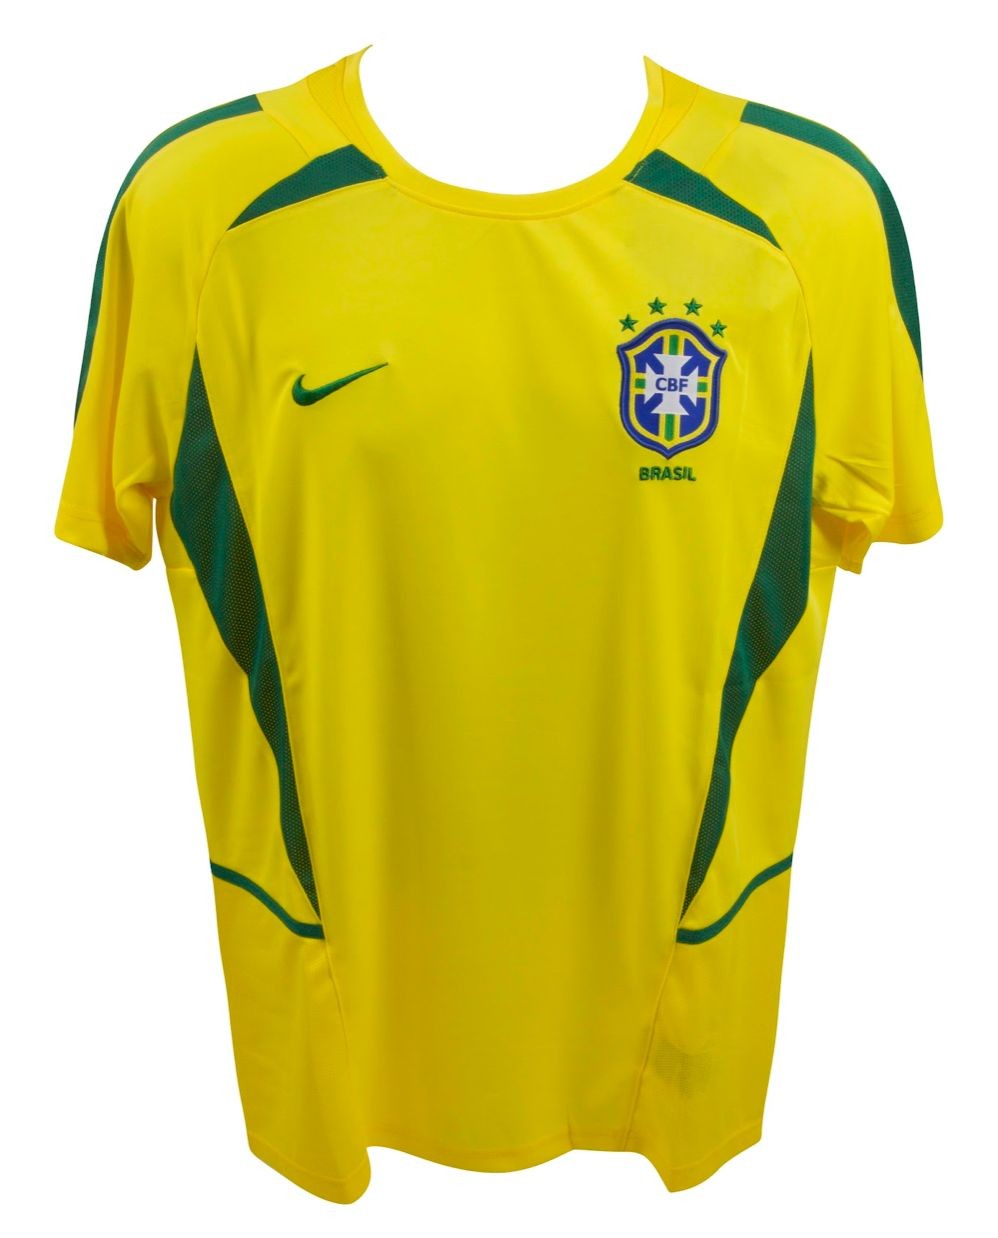 Nike Ronaldinho Signed Brazil Jersey